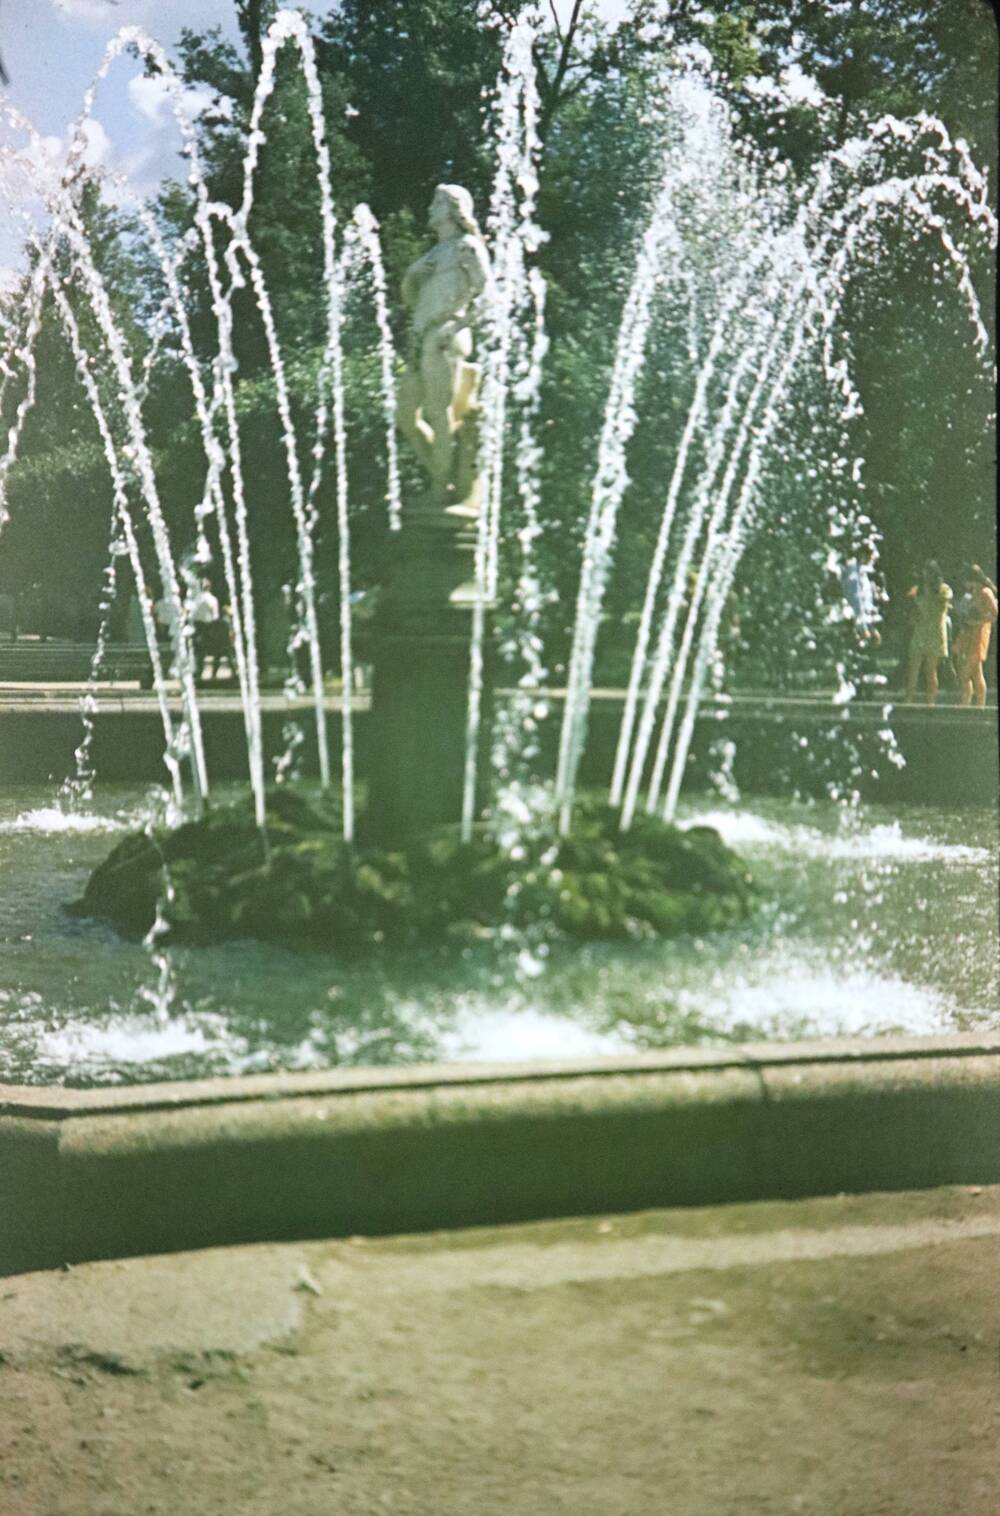 Слайд пластмассовый, на котором изображен летний фонтан со скульптурой человека в полный рост, стоящего на постаменте.